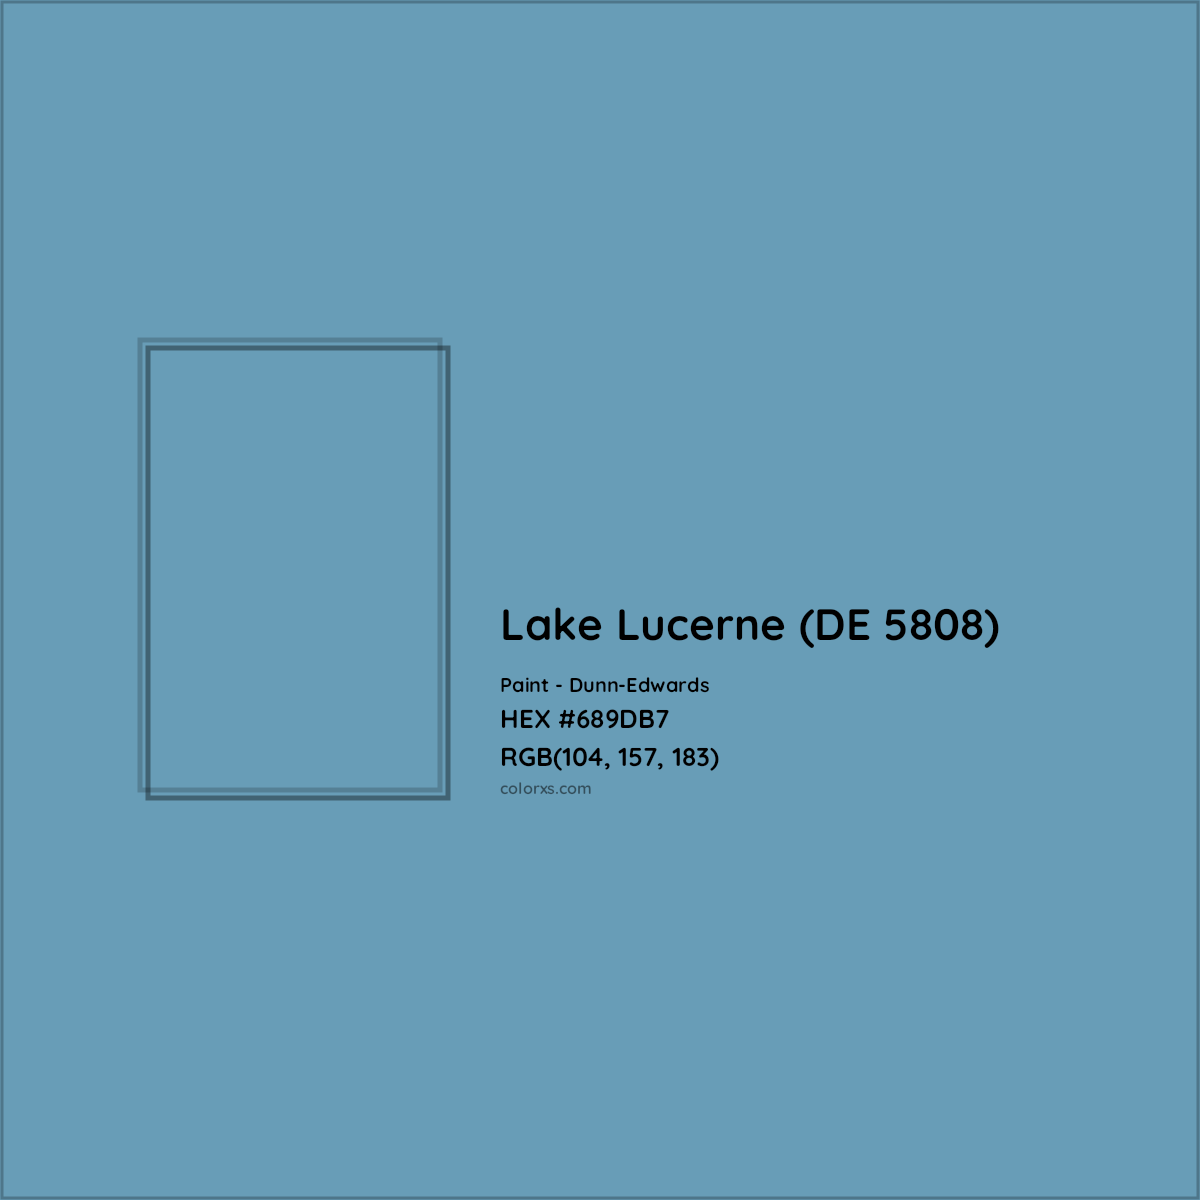 HEX #689DB7 Lake Lucerne (DE 5808) Paint Dunn-Edwards - Color Code